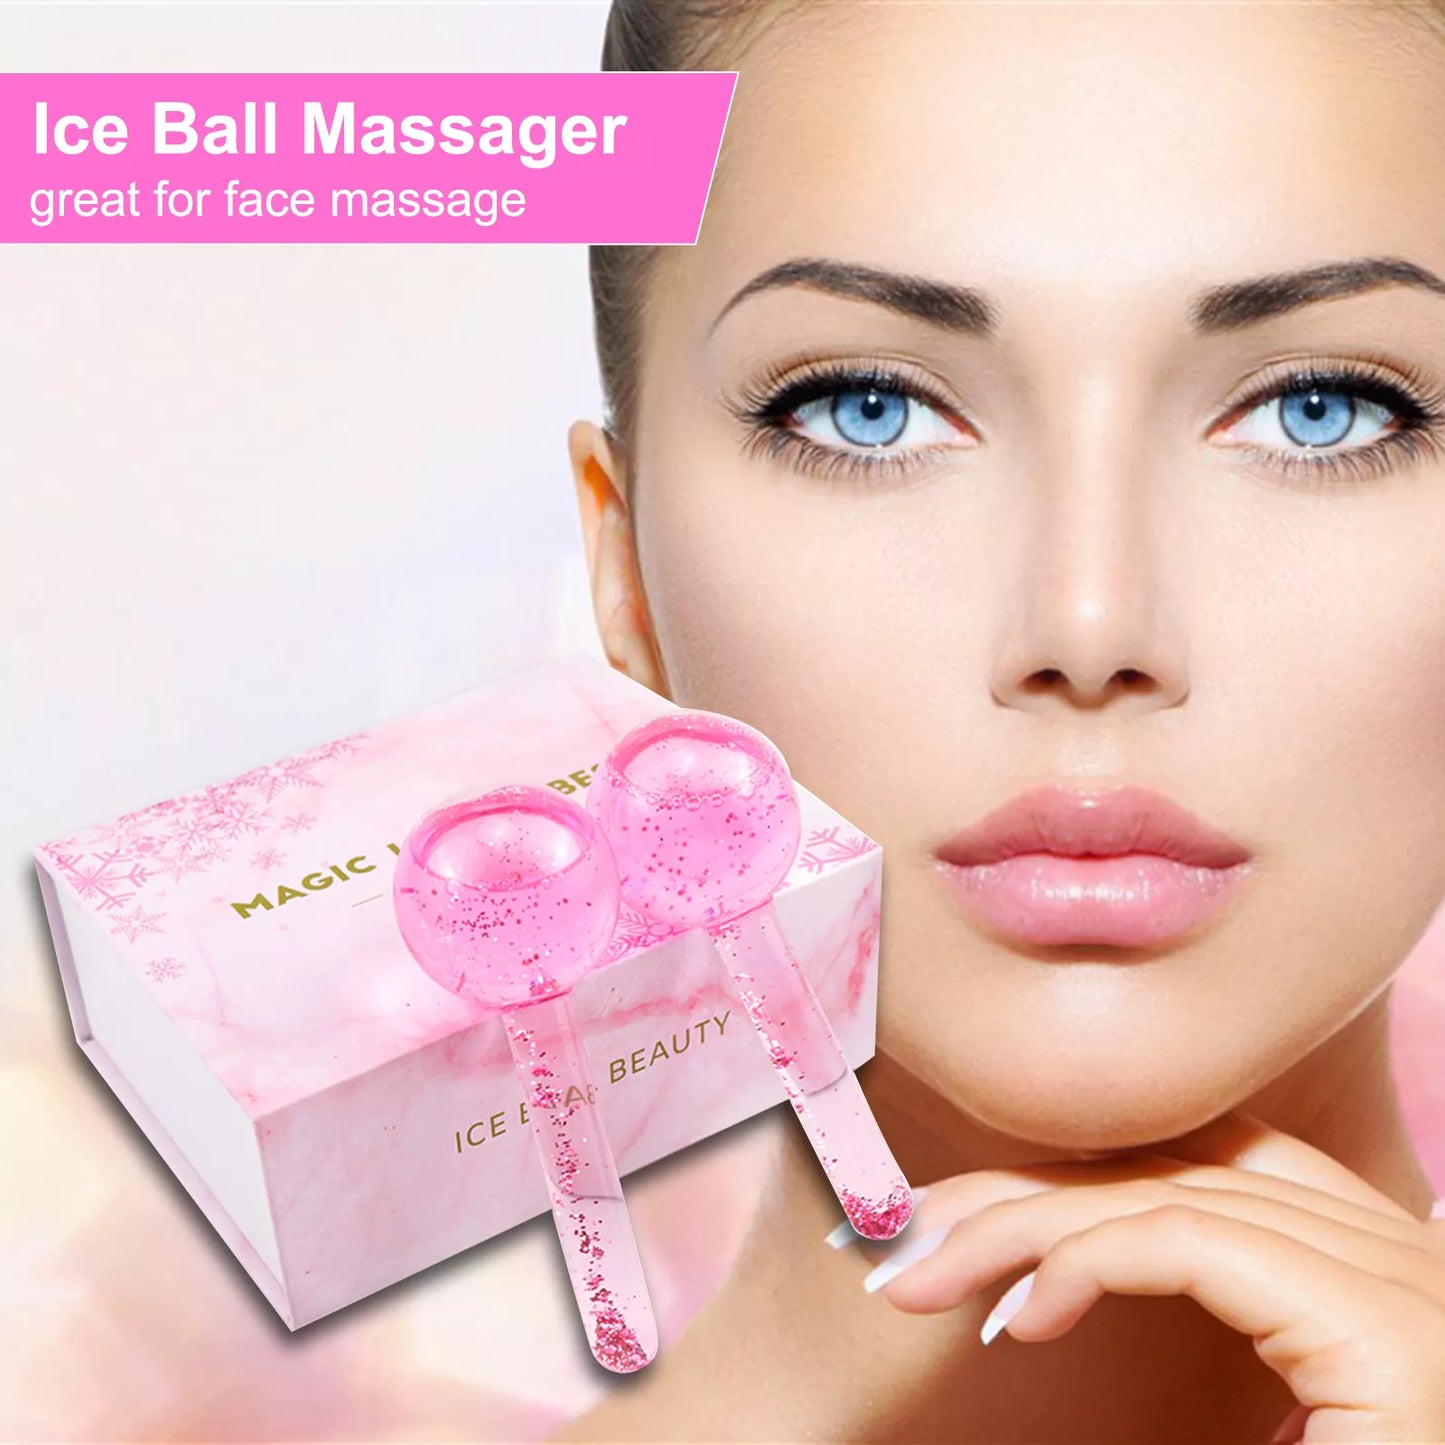 A - Ice Roller Globes Facials Beauty Set Cooling Massager